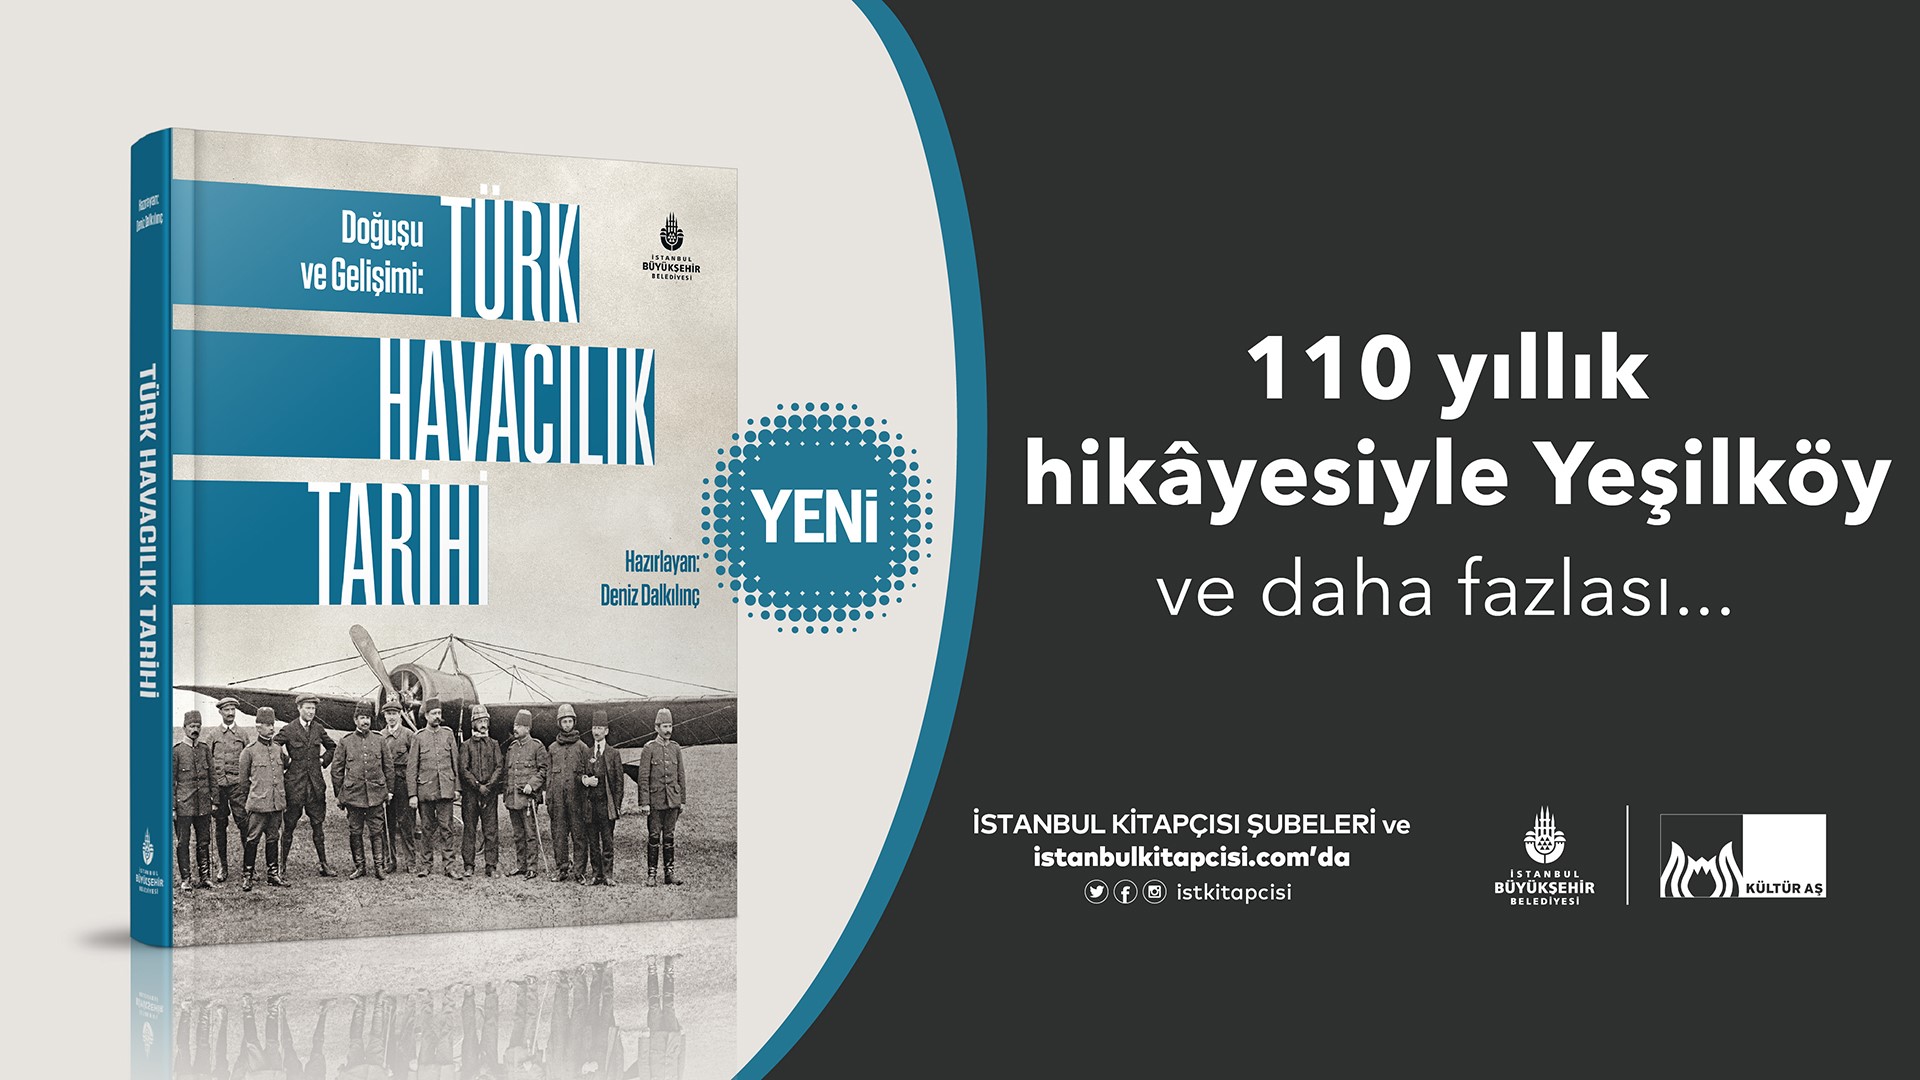 İBB Yayınları’ndan yeni bir eser daha! Doğuşu ve Gelişimi: Türk Havacılık Tarihi okurlarla buluştu.